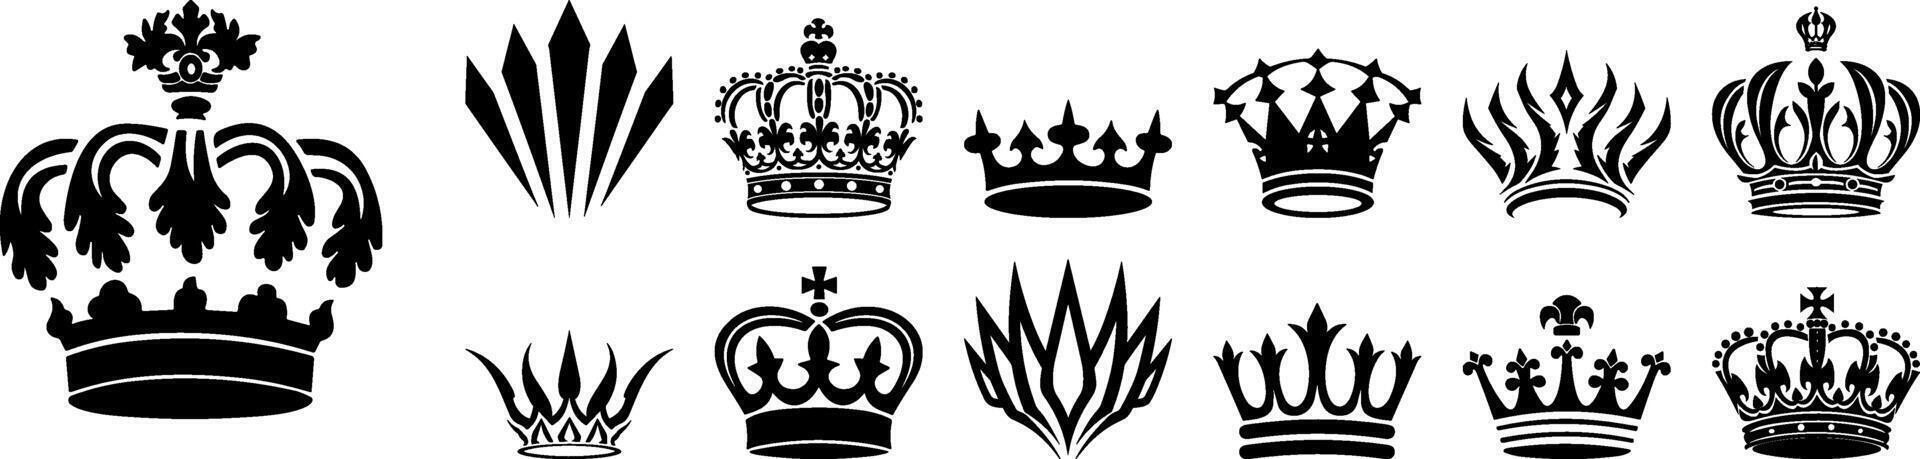 krona ikon uppsättning. krona tecken samling. krona kung eller drottning mega ikon uppsättning. kunglig krona symbol. heraldisk platt svart silhuetter isolerat på vit bakgrund. kunglig huvud Tillbehör, hatt emblem vektor